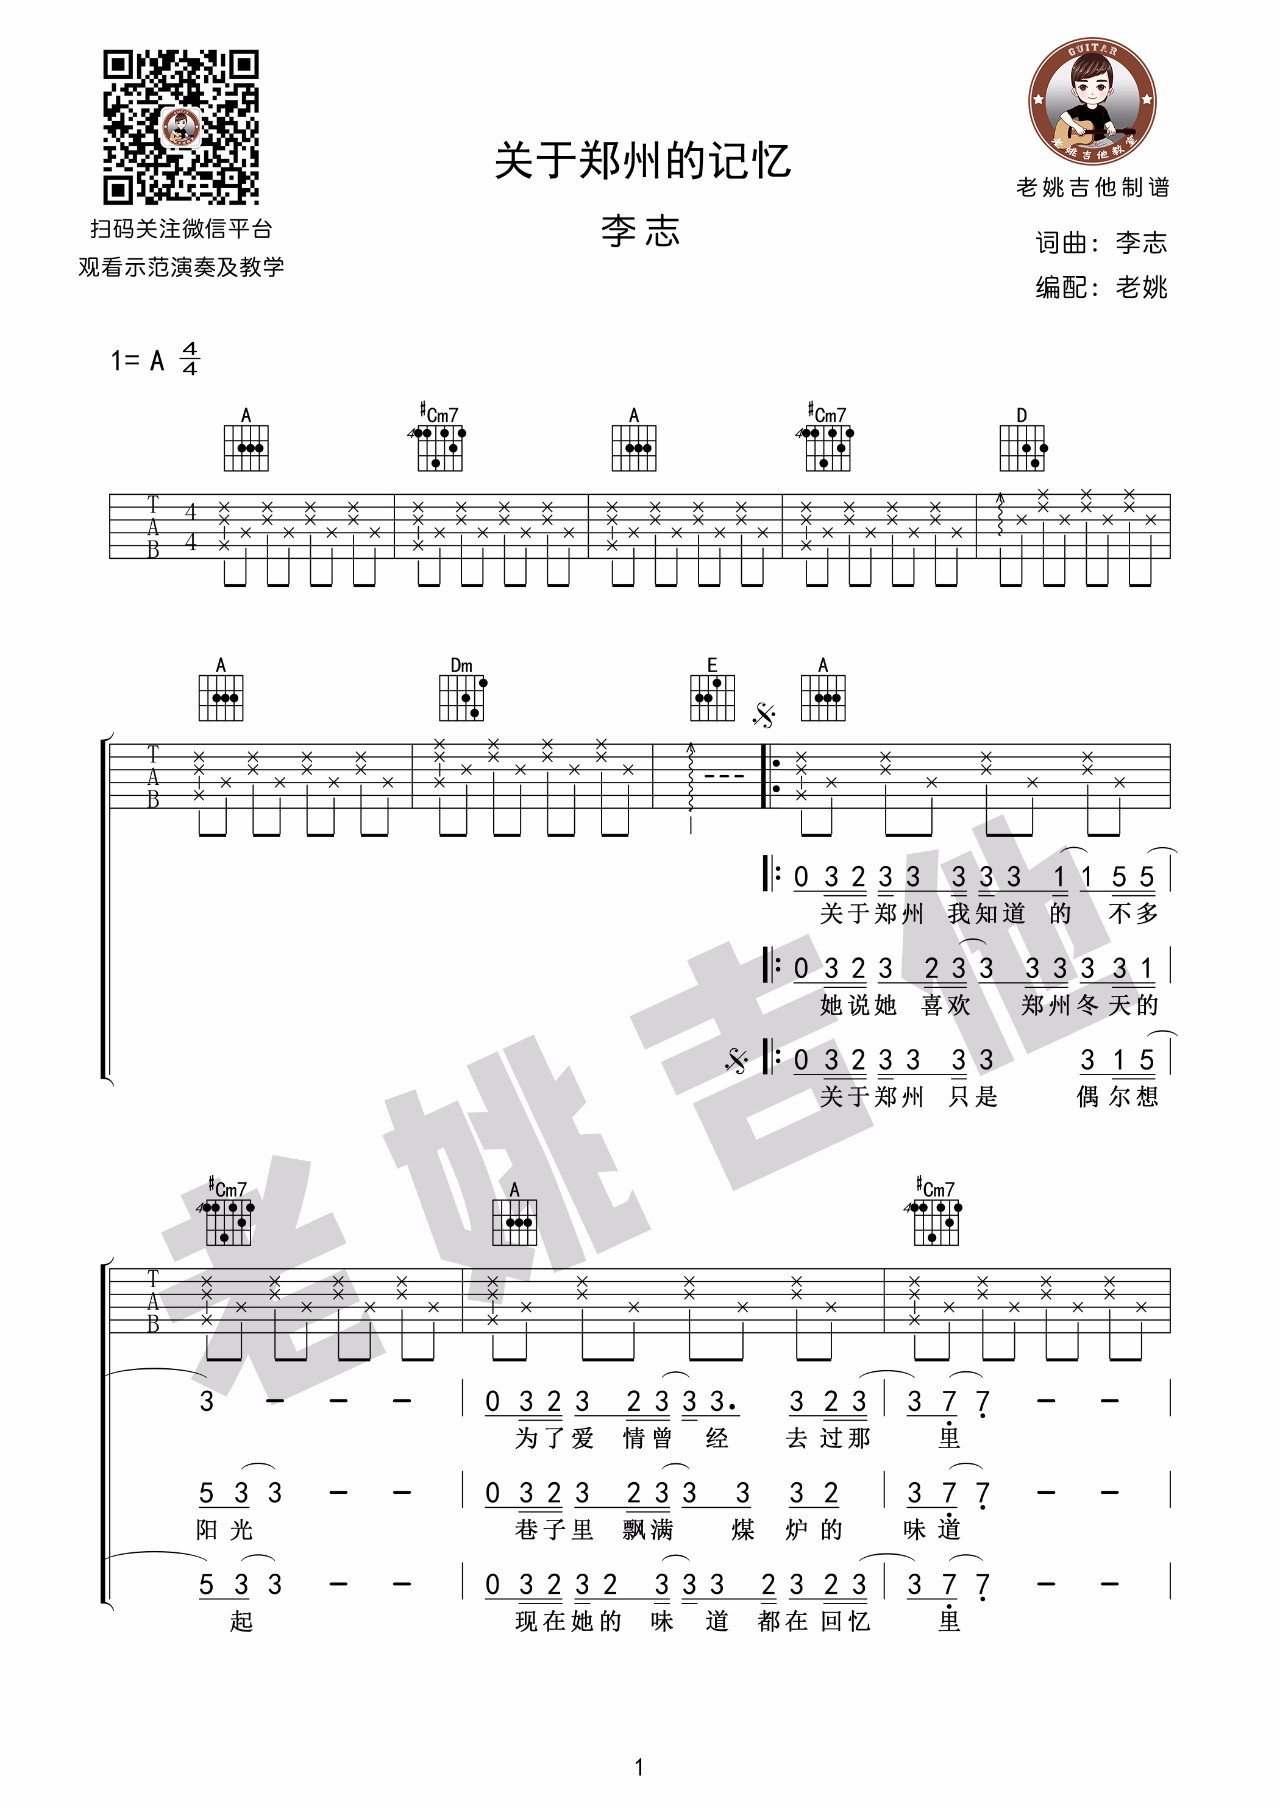 关于郑州的记忆吉他谱,原版李志歌曲,简单指弹曲谱,高清六线乐谱 - 极网吉它谱大全